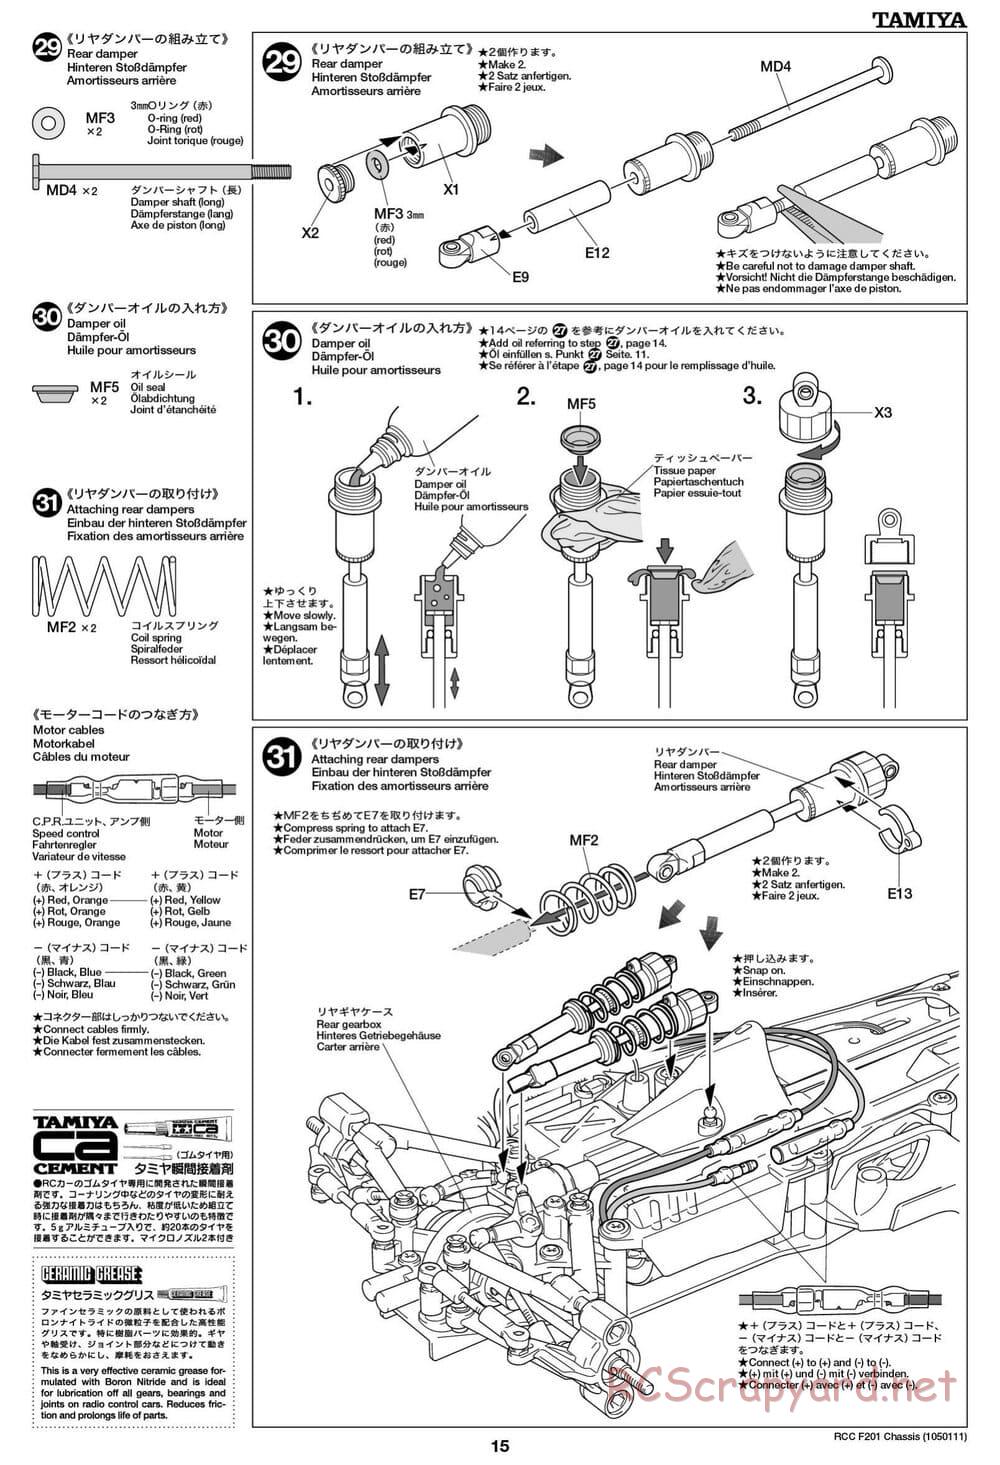 Tamiya - F201 Chassis - Manual - Page 15